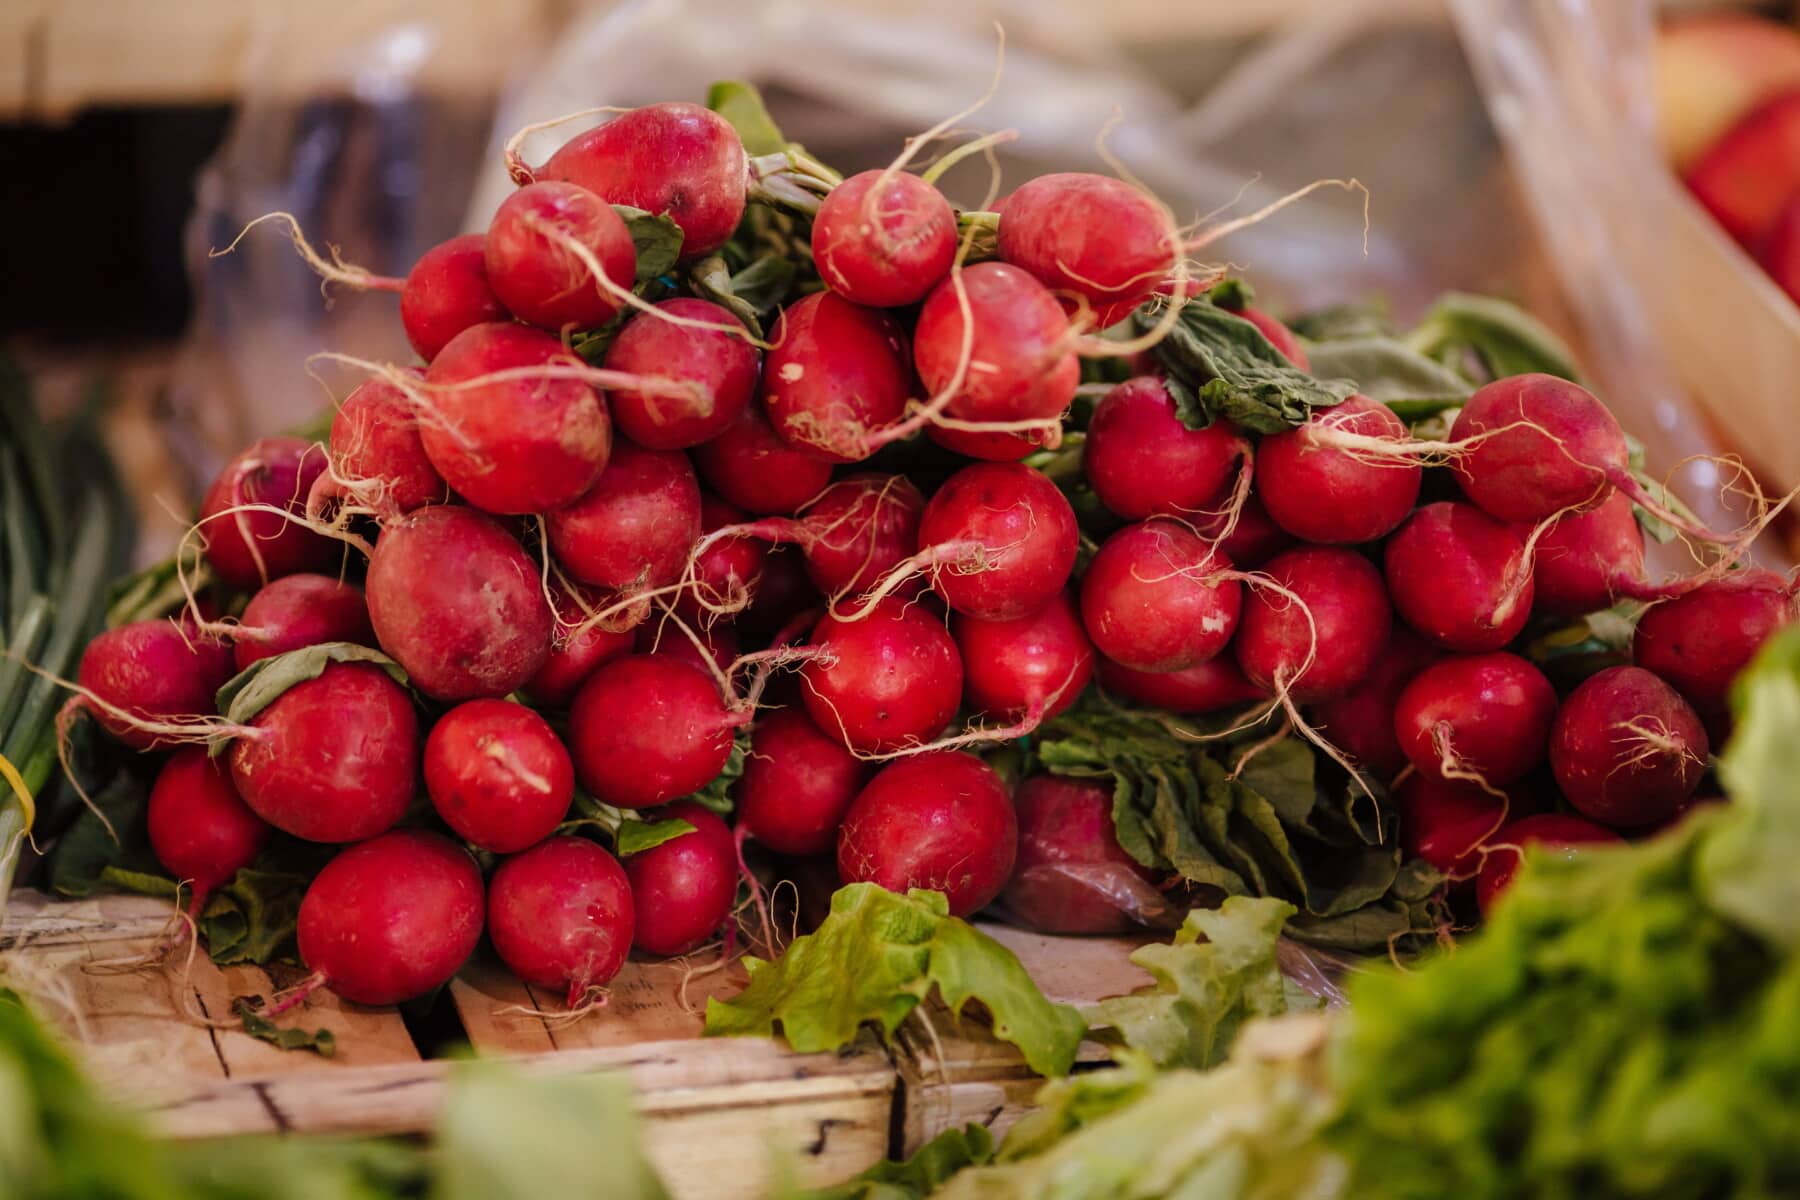 rouge, radis, Shopping, légumes, marché, Agriculture, produits, herbe, légume, alimentaire